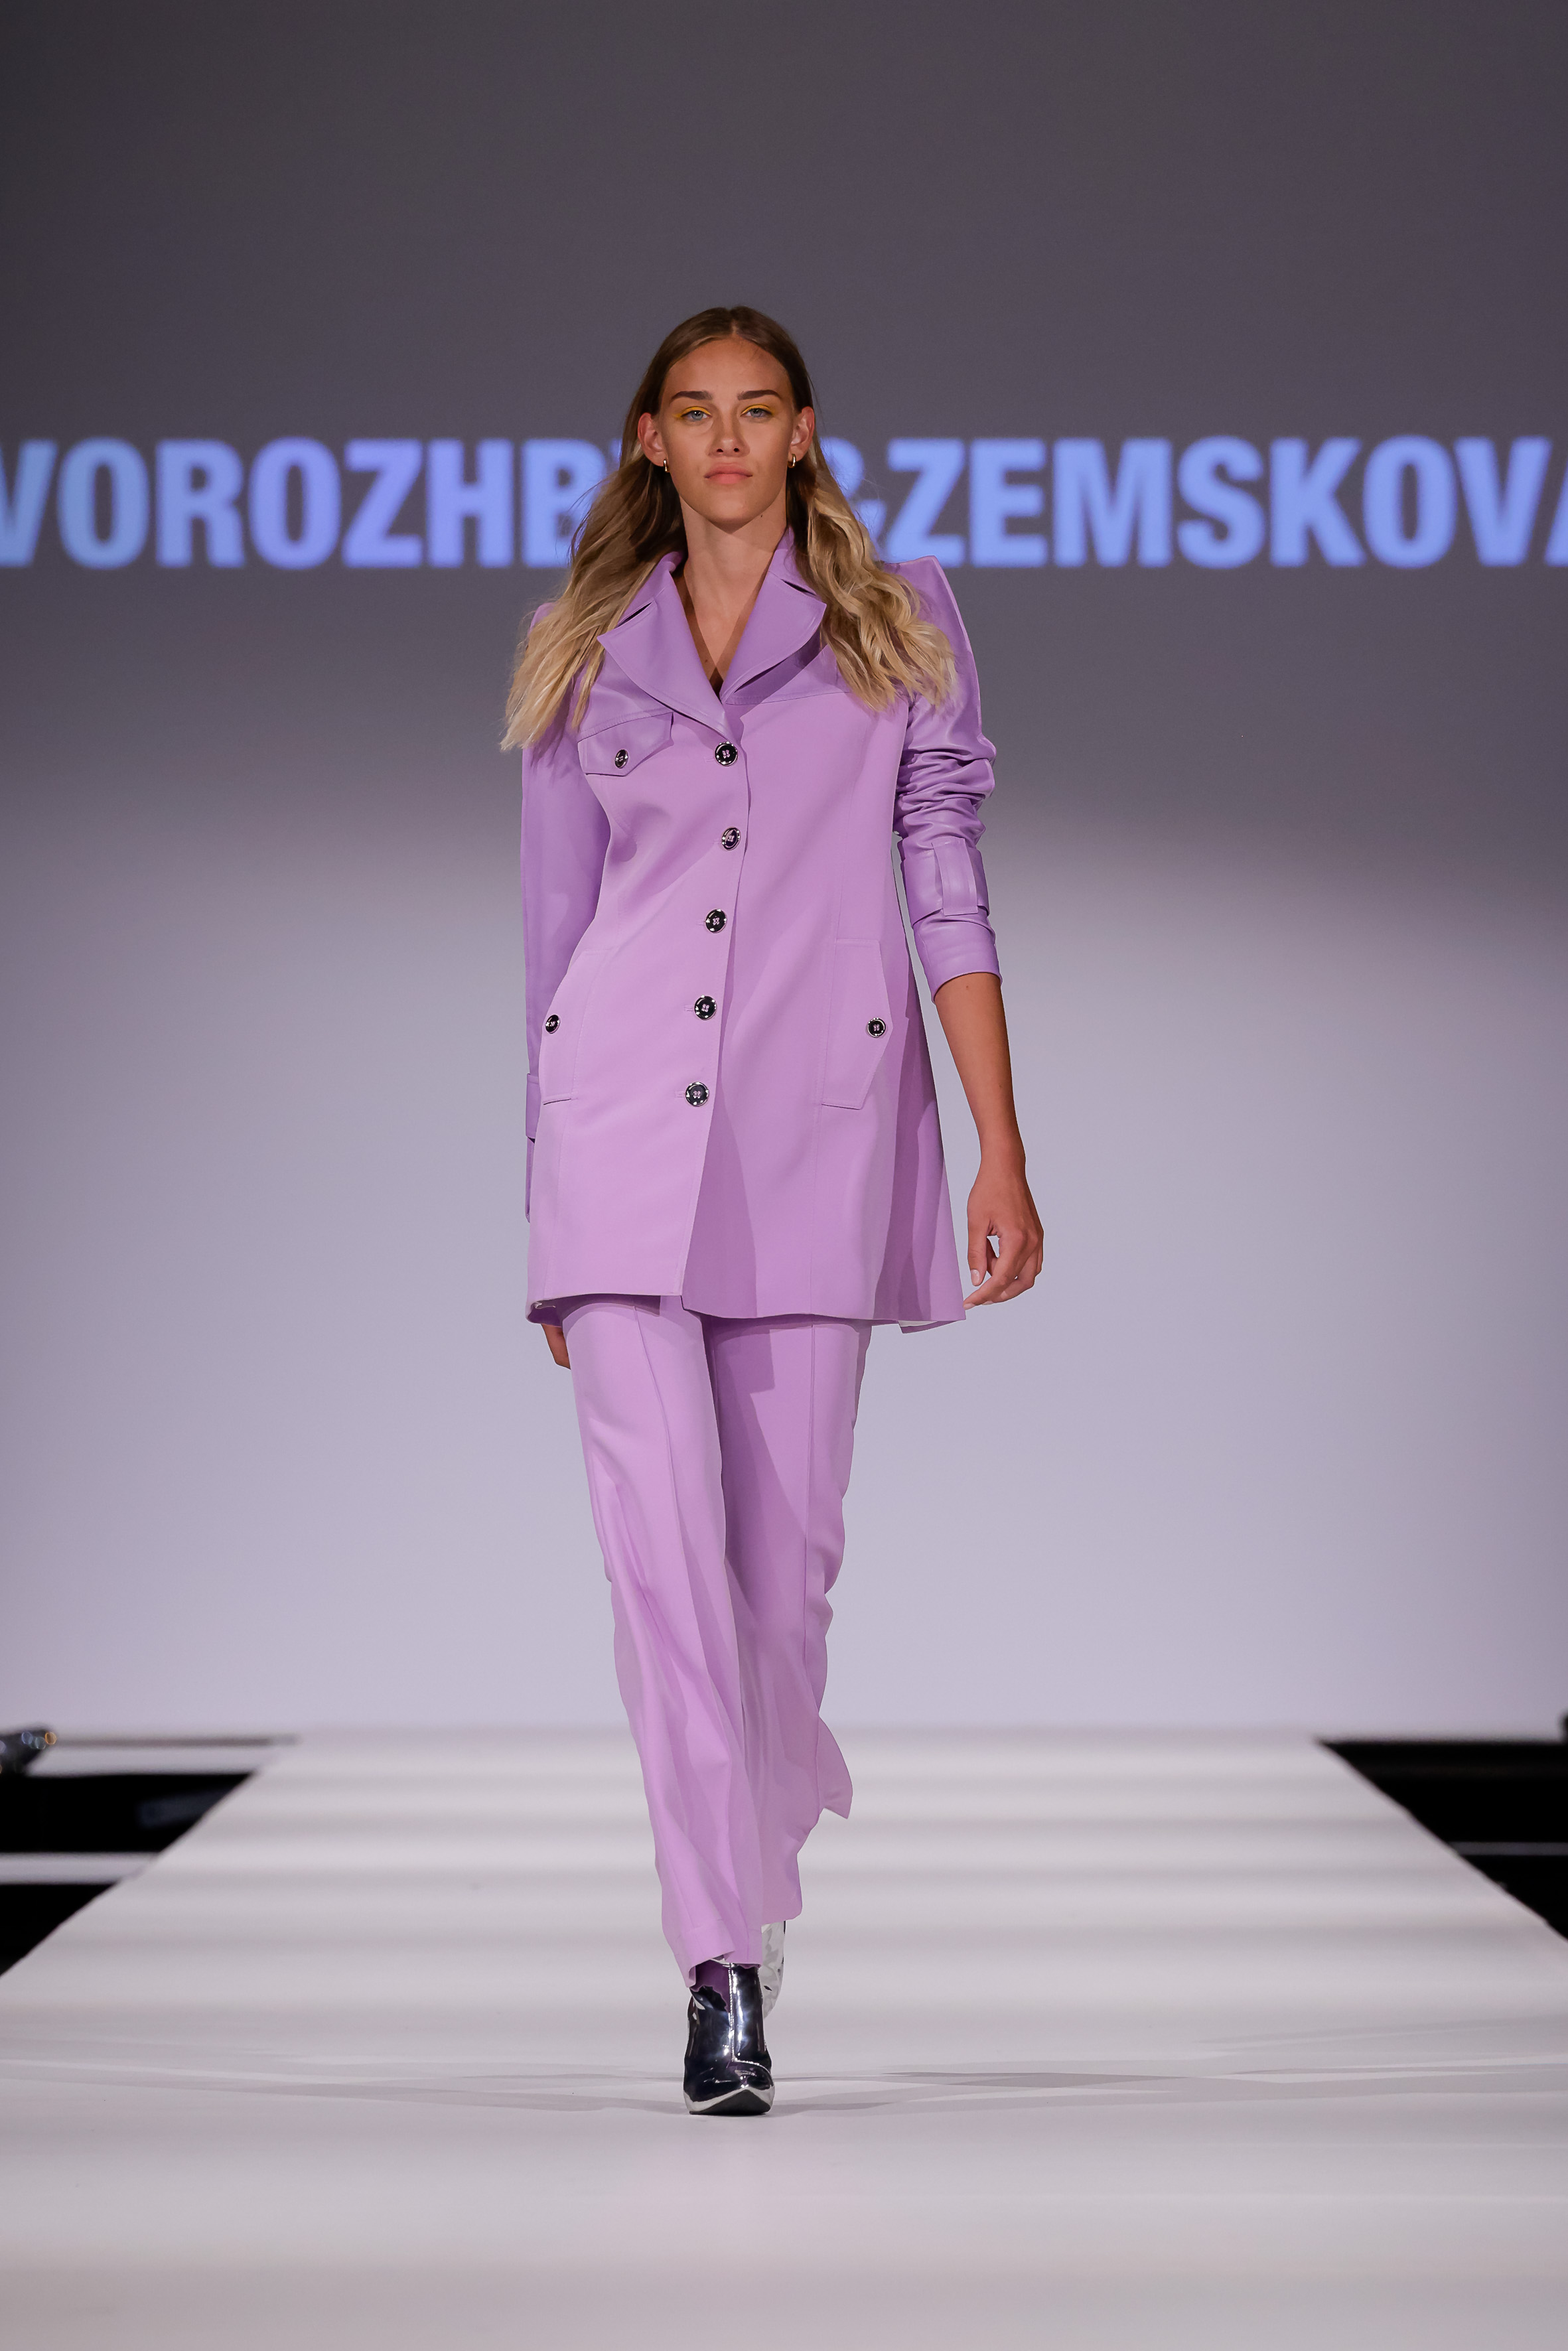 Vorozhbyt&Zemskova at Vienna Fashion Week